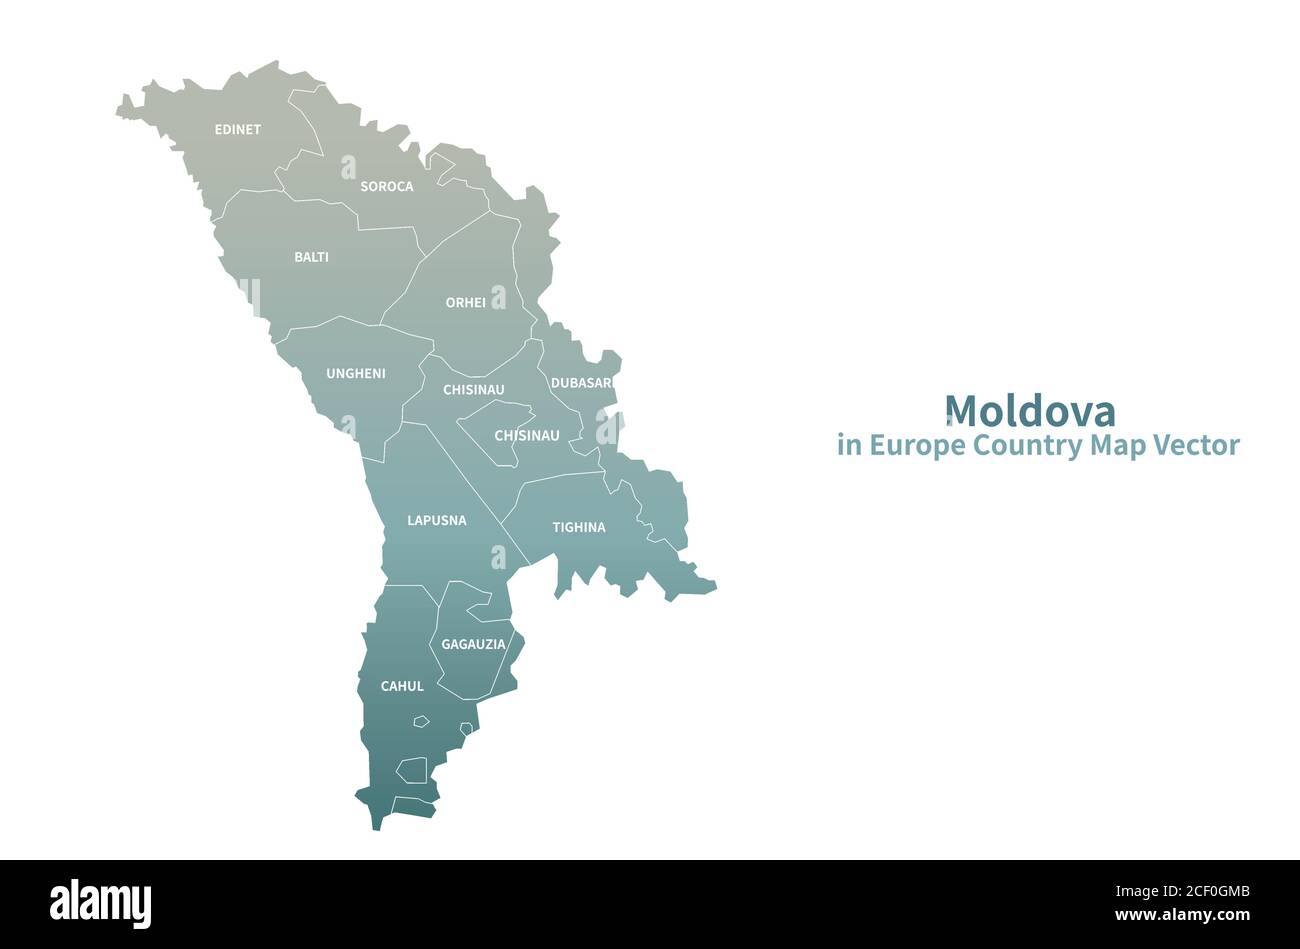 Moldova vector map. European Country Map Green Series. Stock Vector